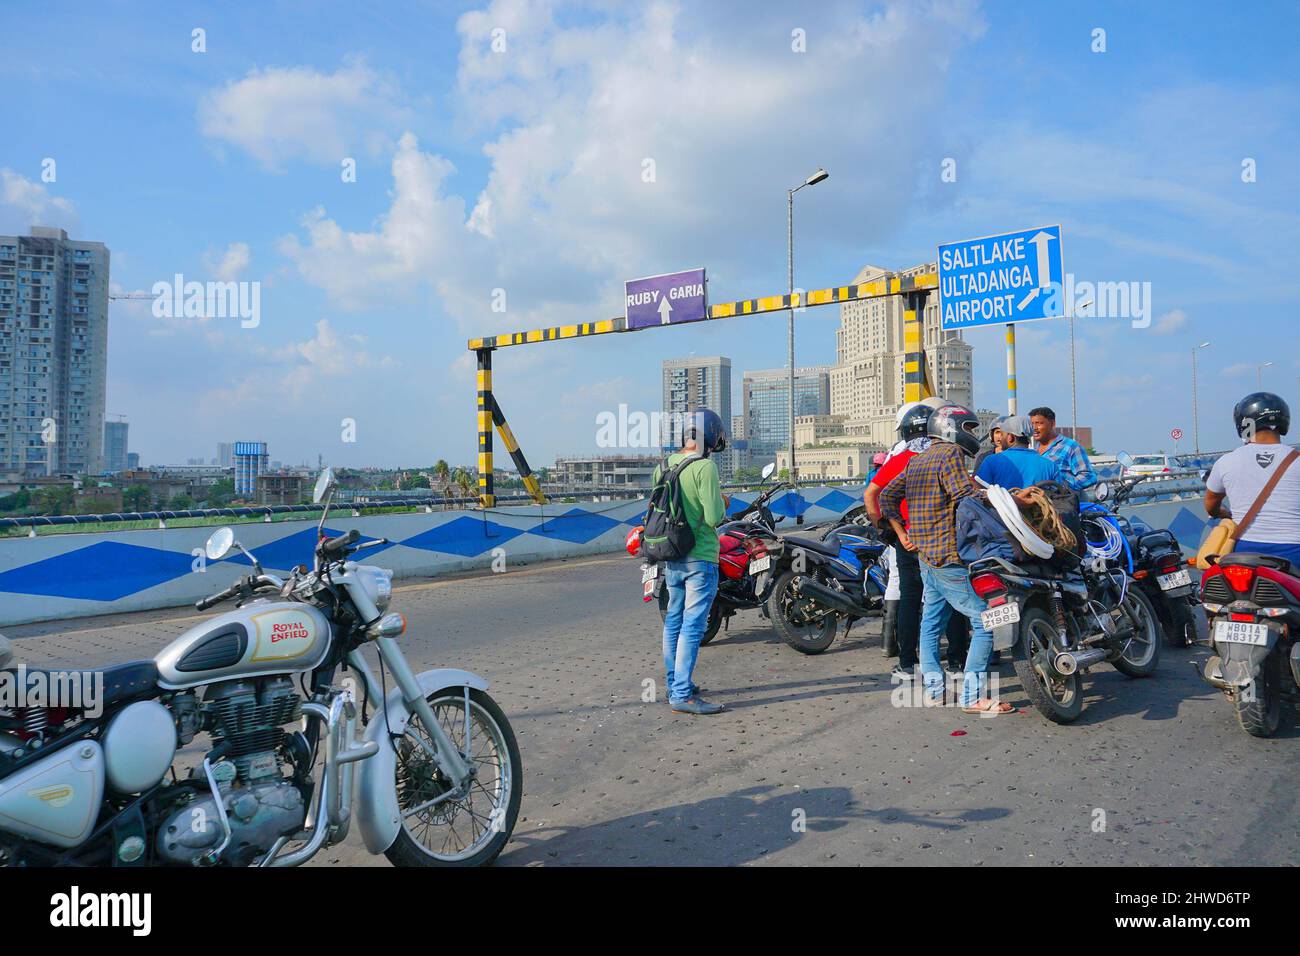 Kolkata, Bengala Occidental, India - 20th de julio de 2019 : Los ciclistas se reunieron en Maa sobrevolar para resolver un problema de tráfico, edificios modernos, cielo azul y nube blanca Foto de stock